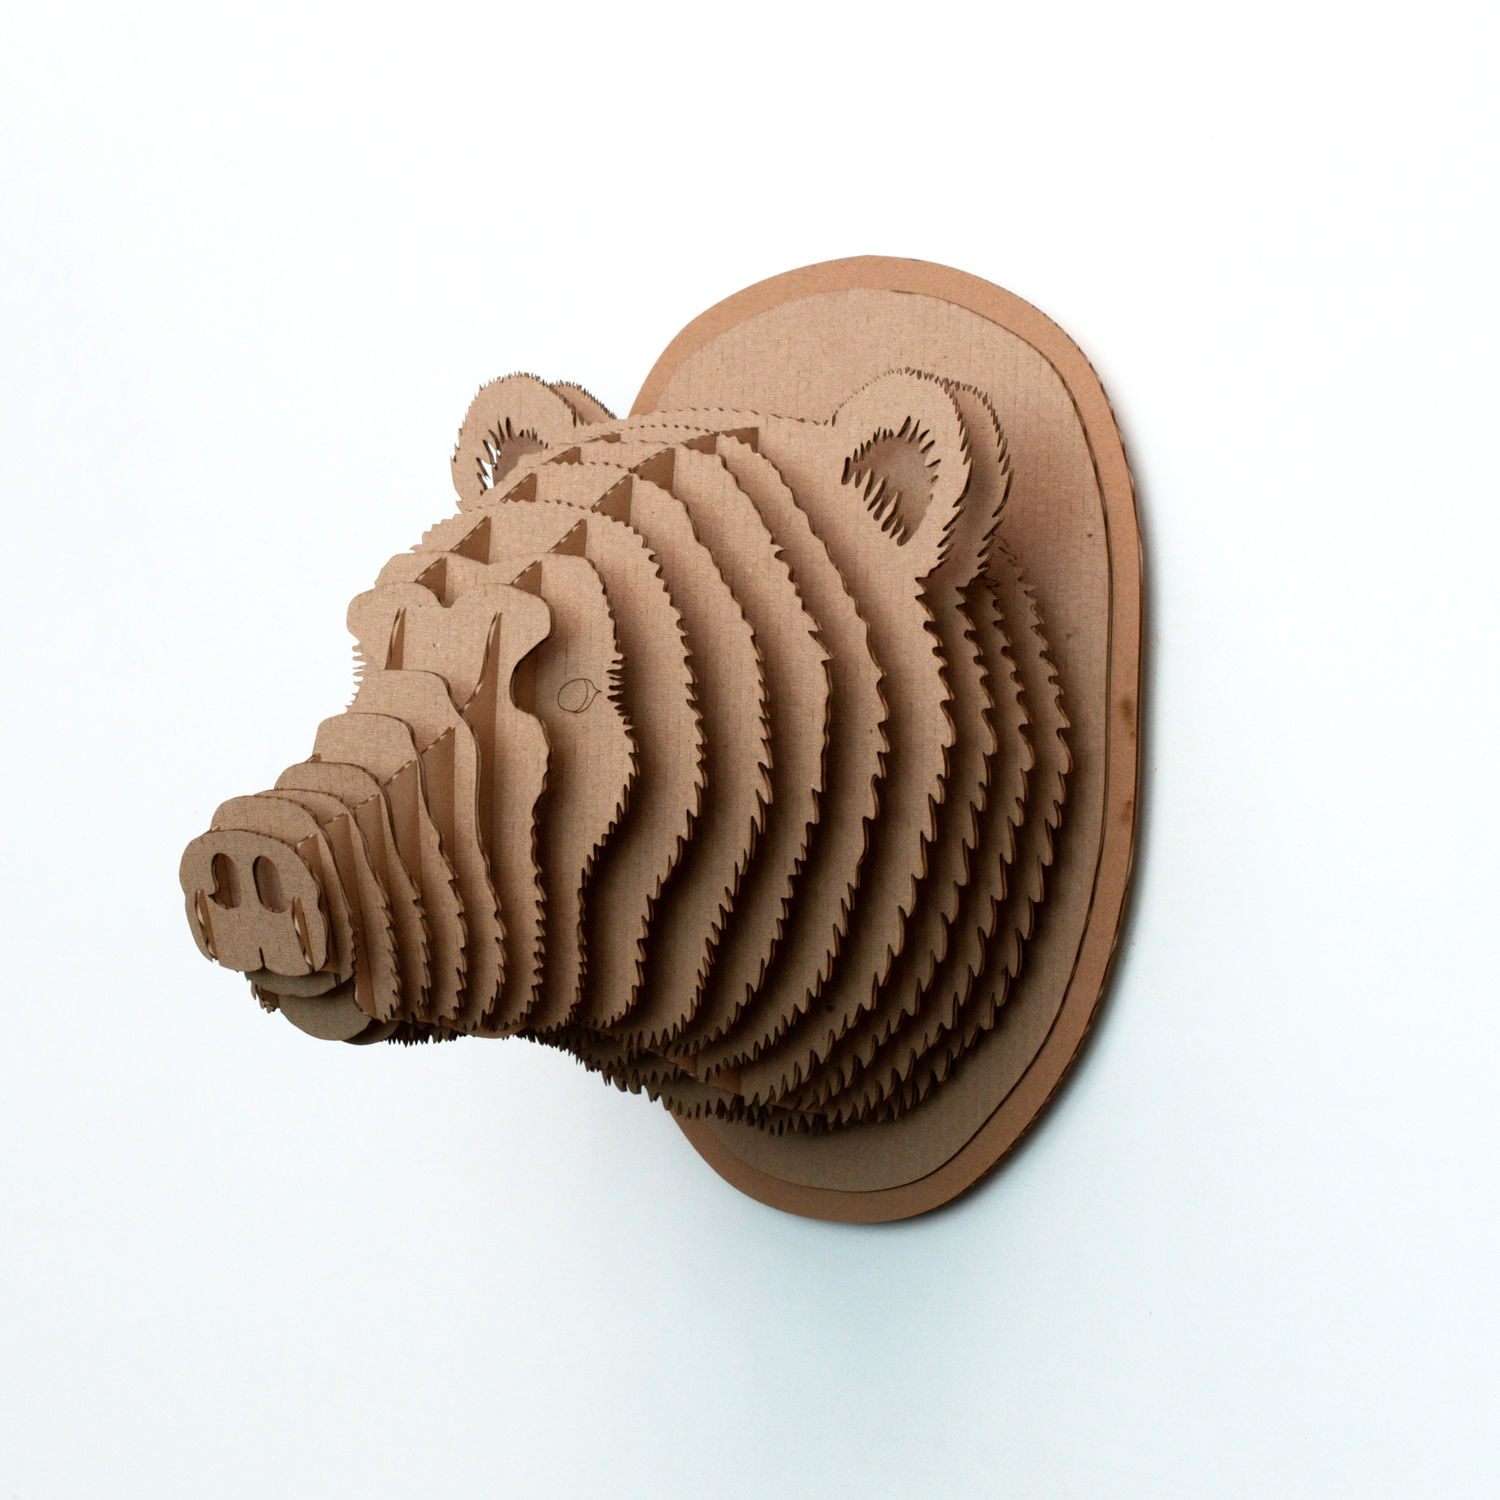 Конструктор. Голова носорога. Papercraft. 3D фигура из бумаги и картона.